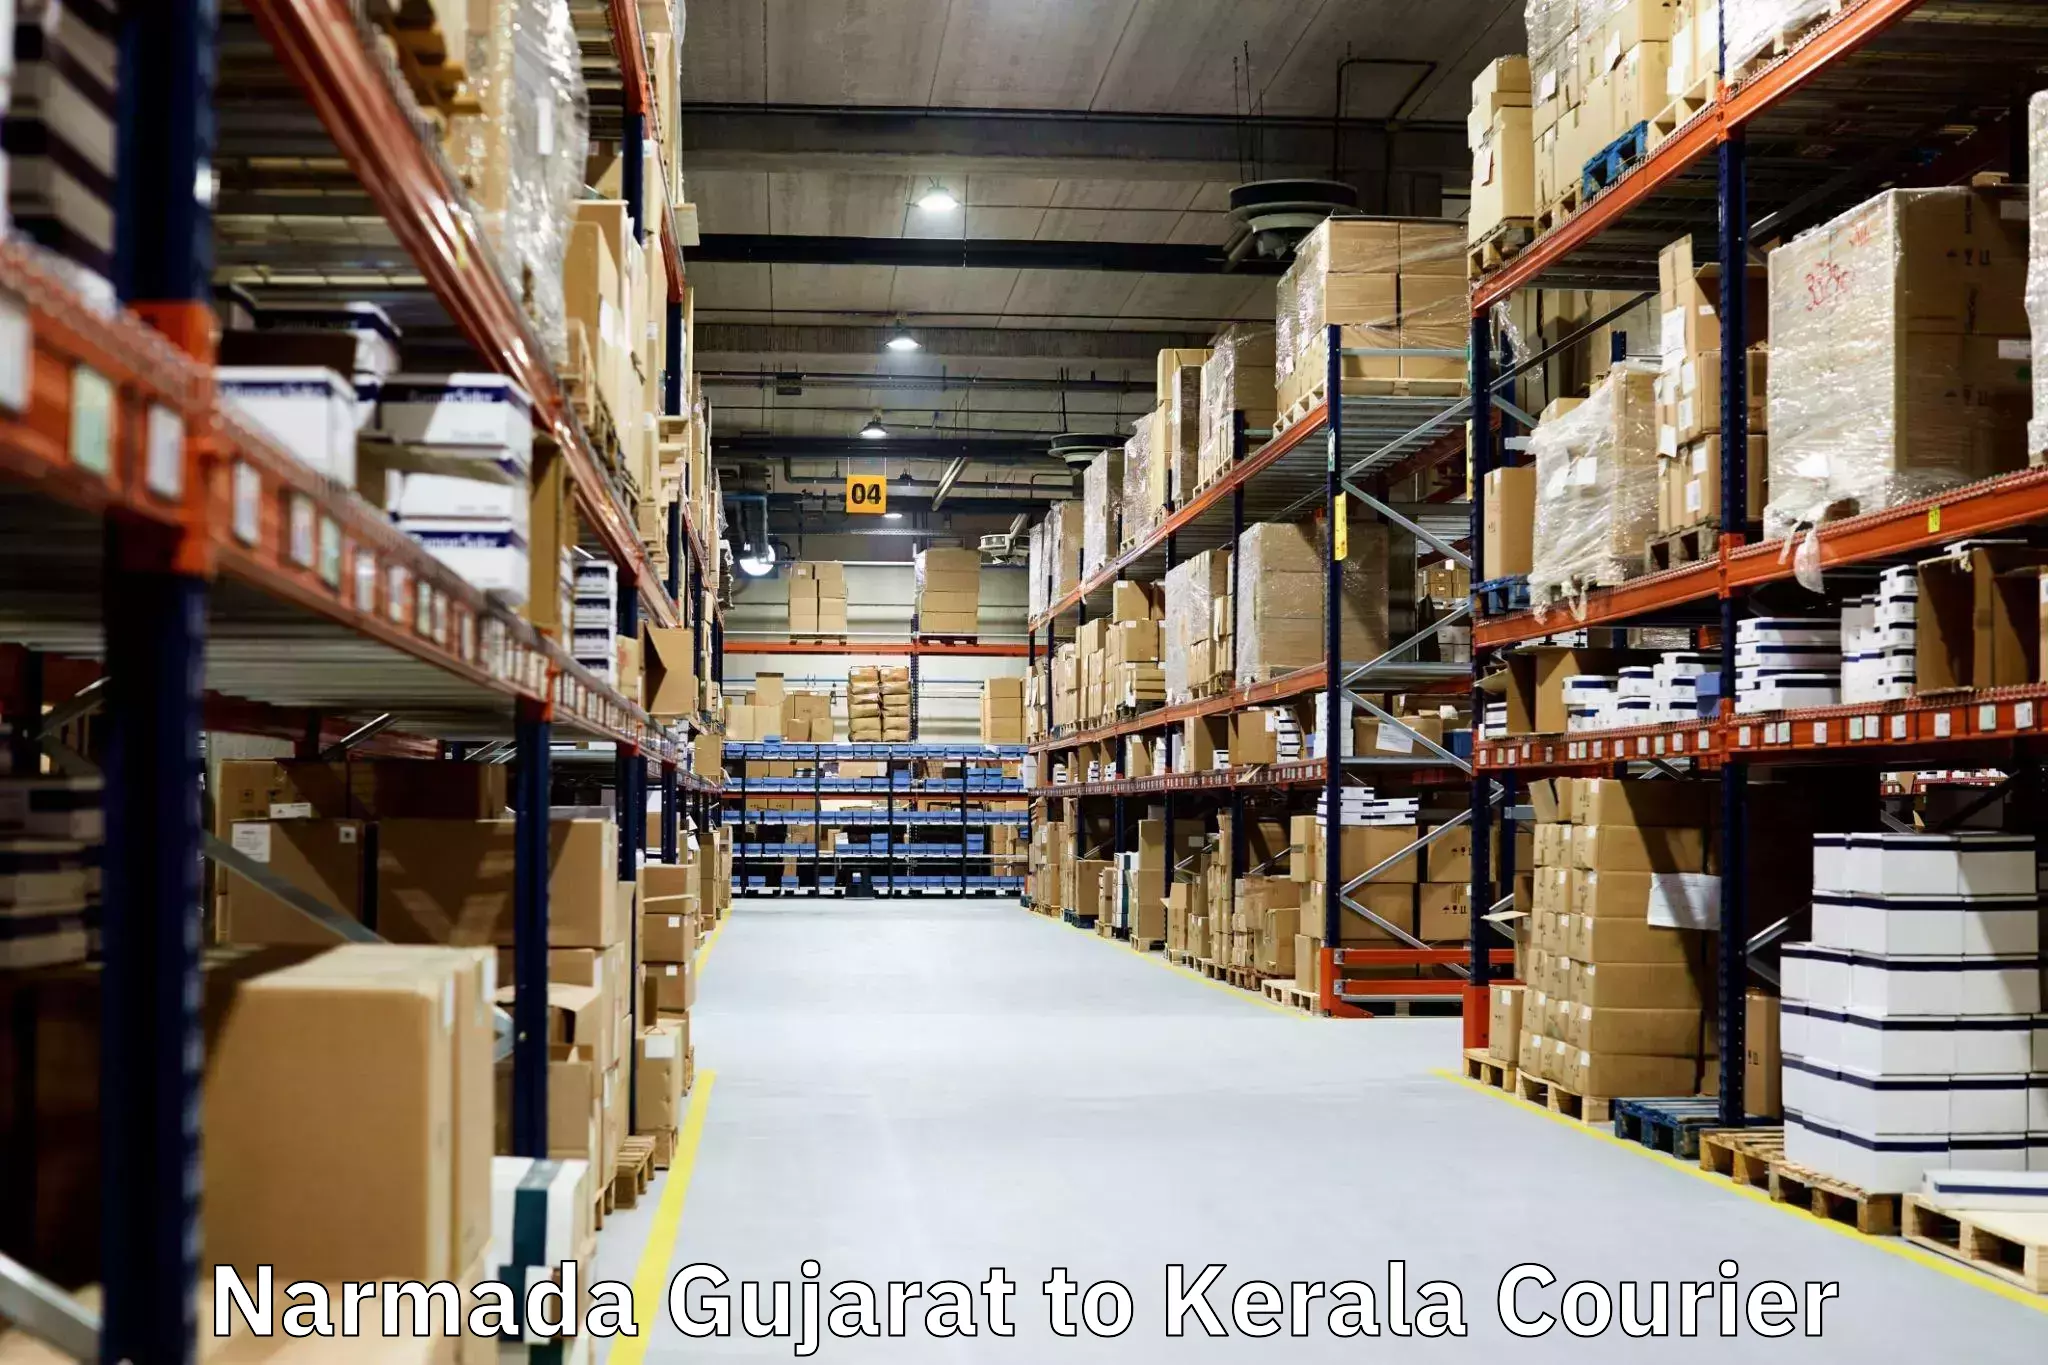 Professional packing services Narmada Gujarat to Manjeri